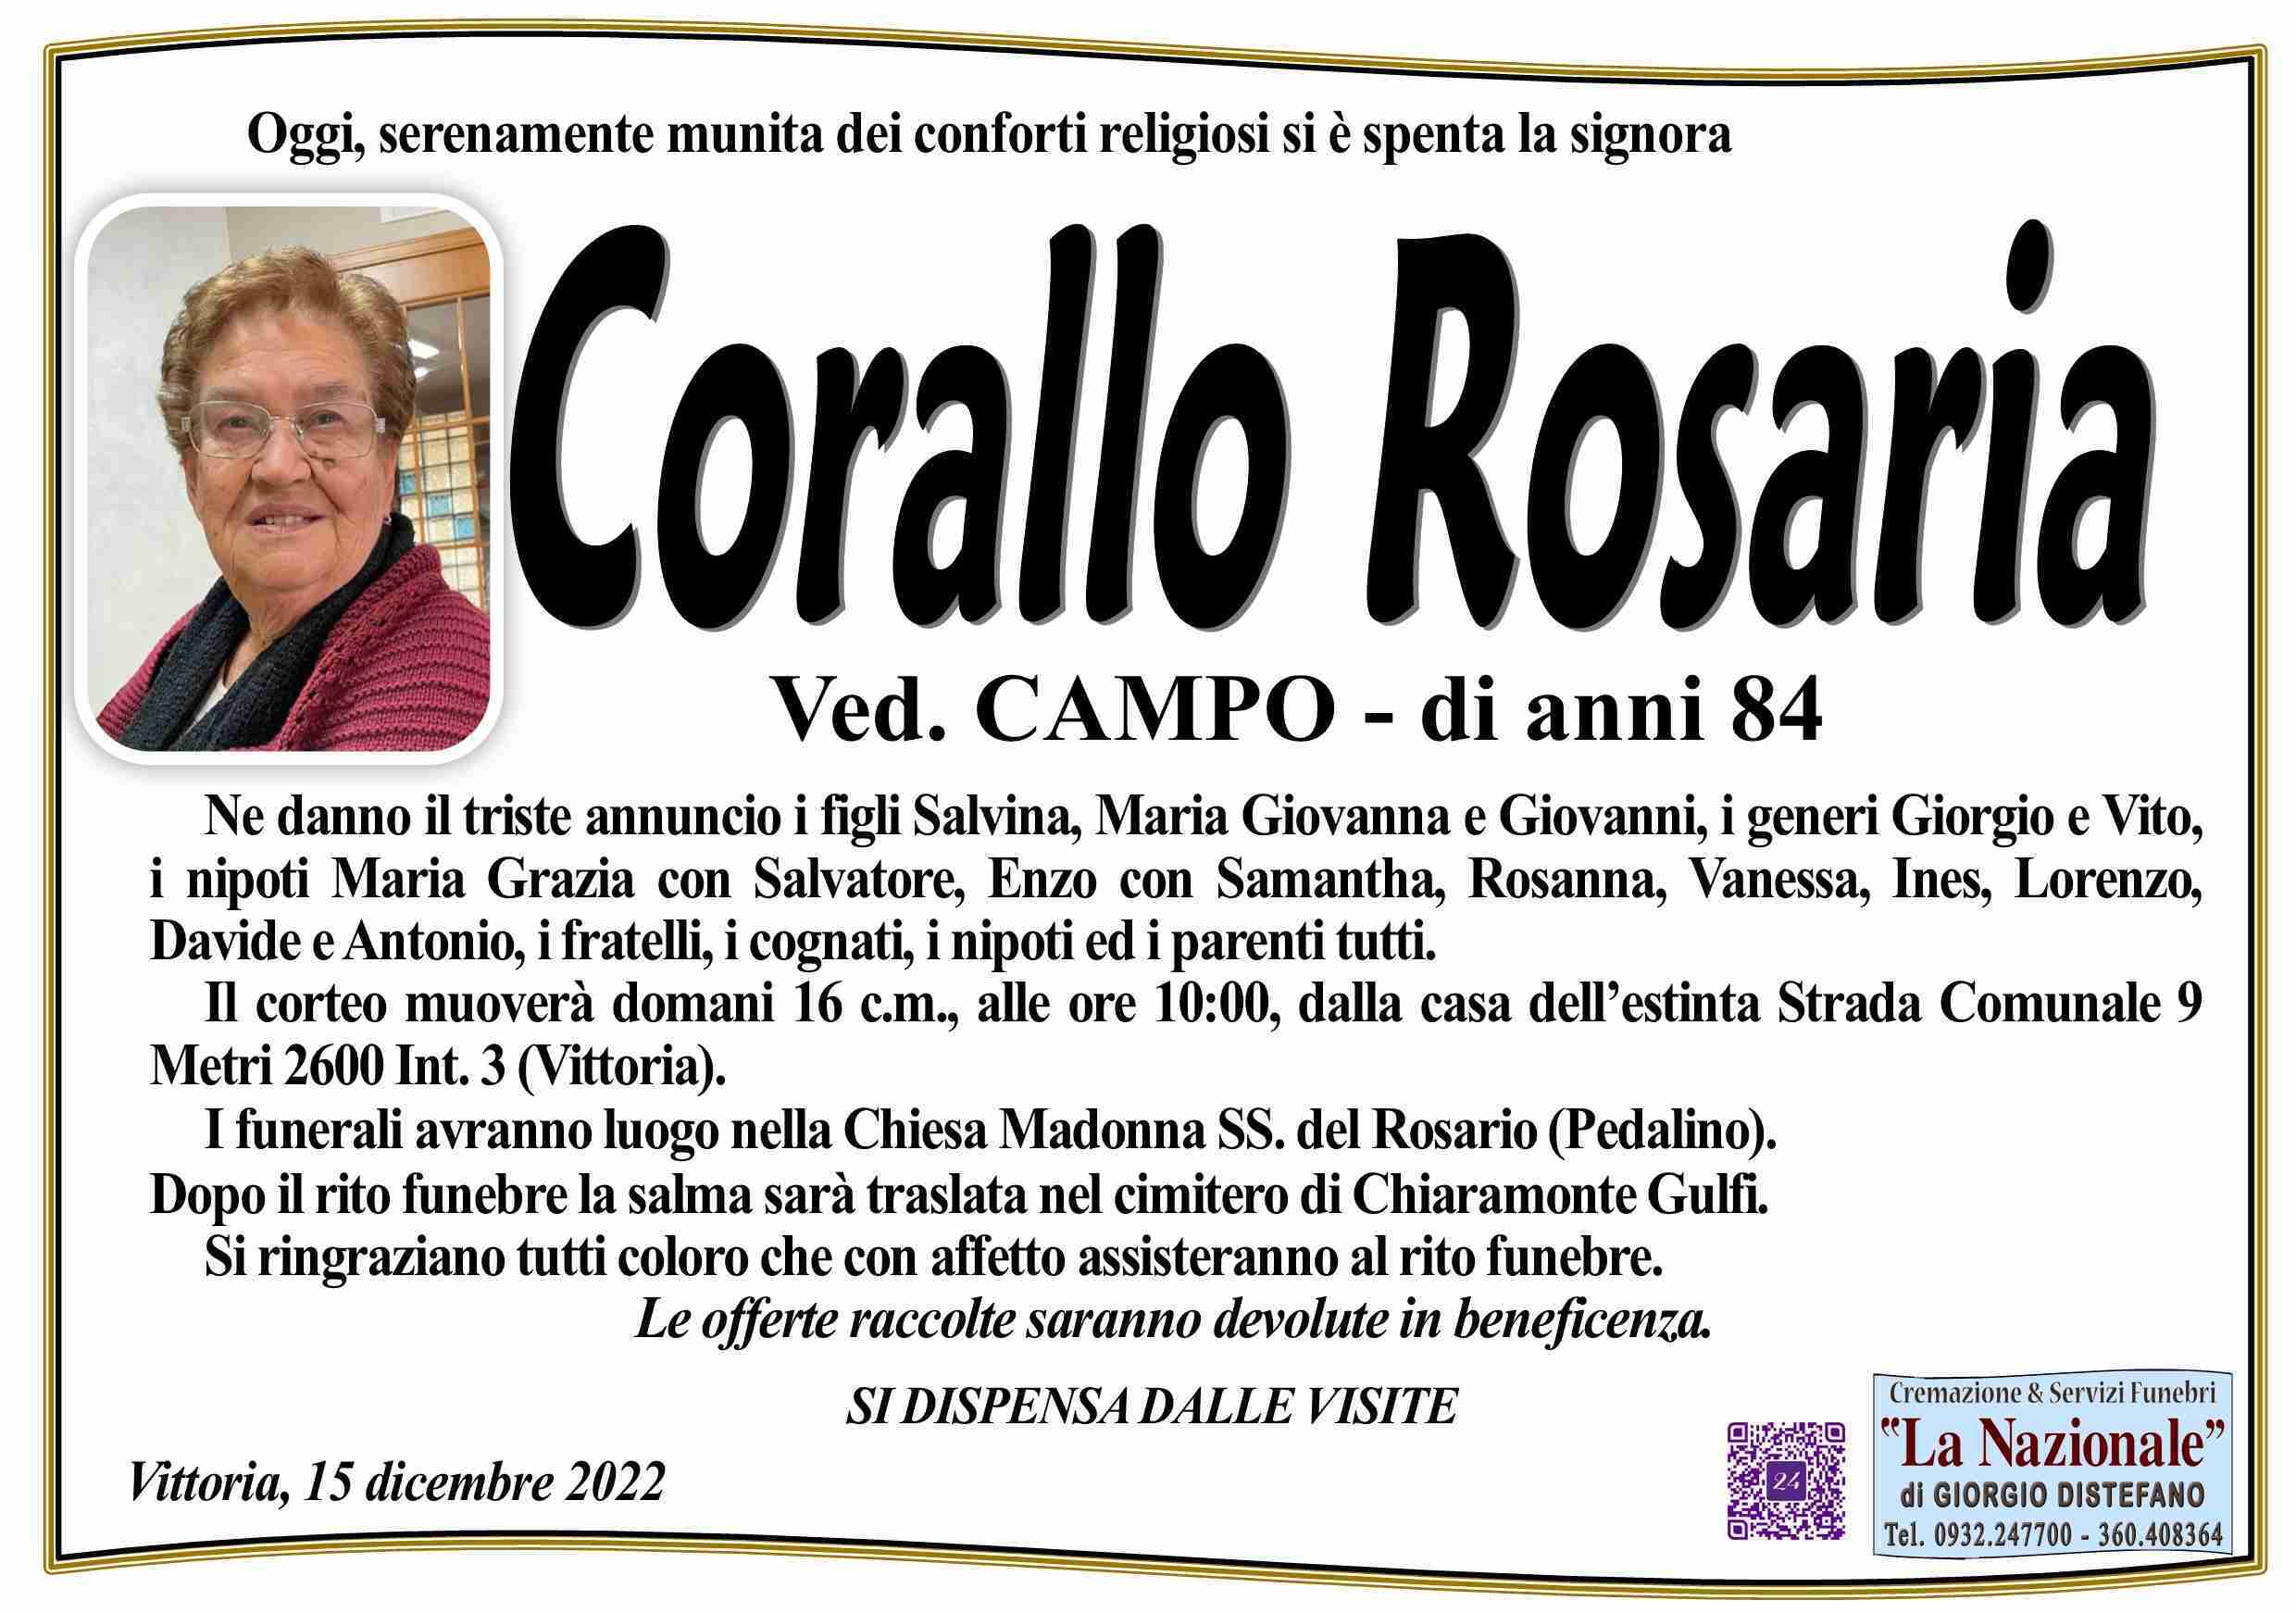 Rosaria Corallo